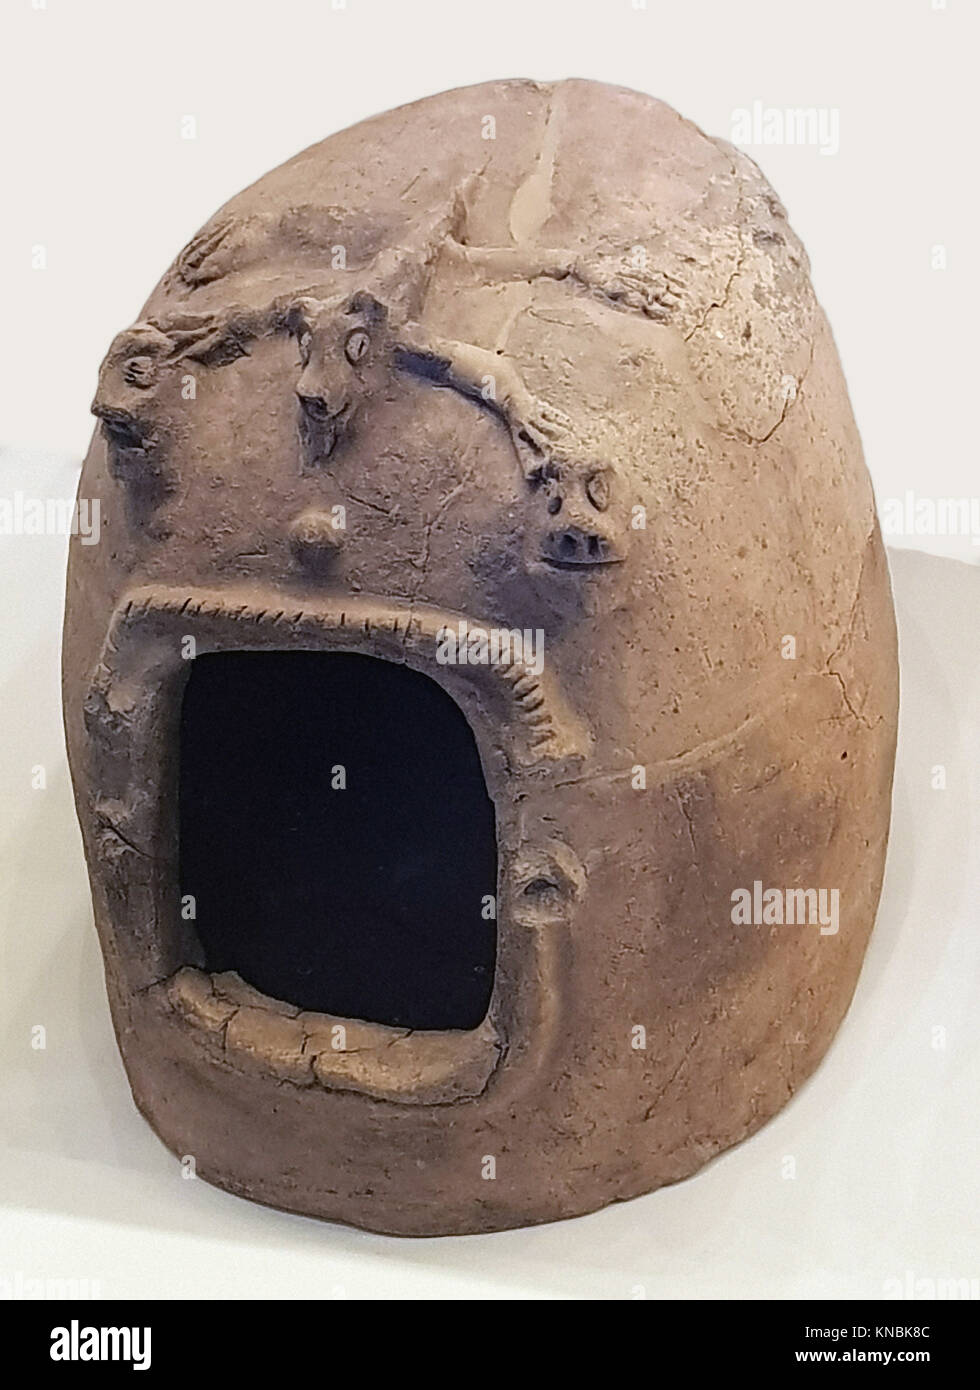 6200. Quizás la máscara de piedra utilizados en ceremonias de veneración, período neolítico, 7ª. Milenio A.C. encontrado en las colinas de Judea. Foto de stock